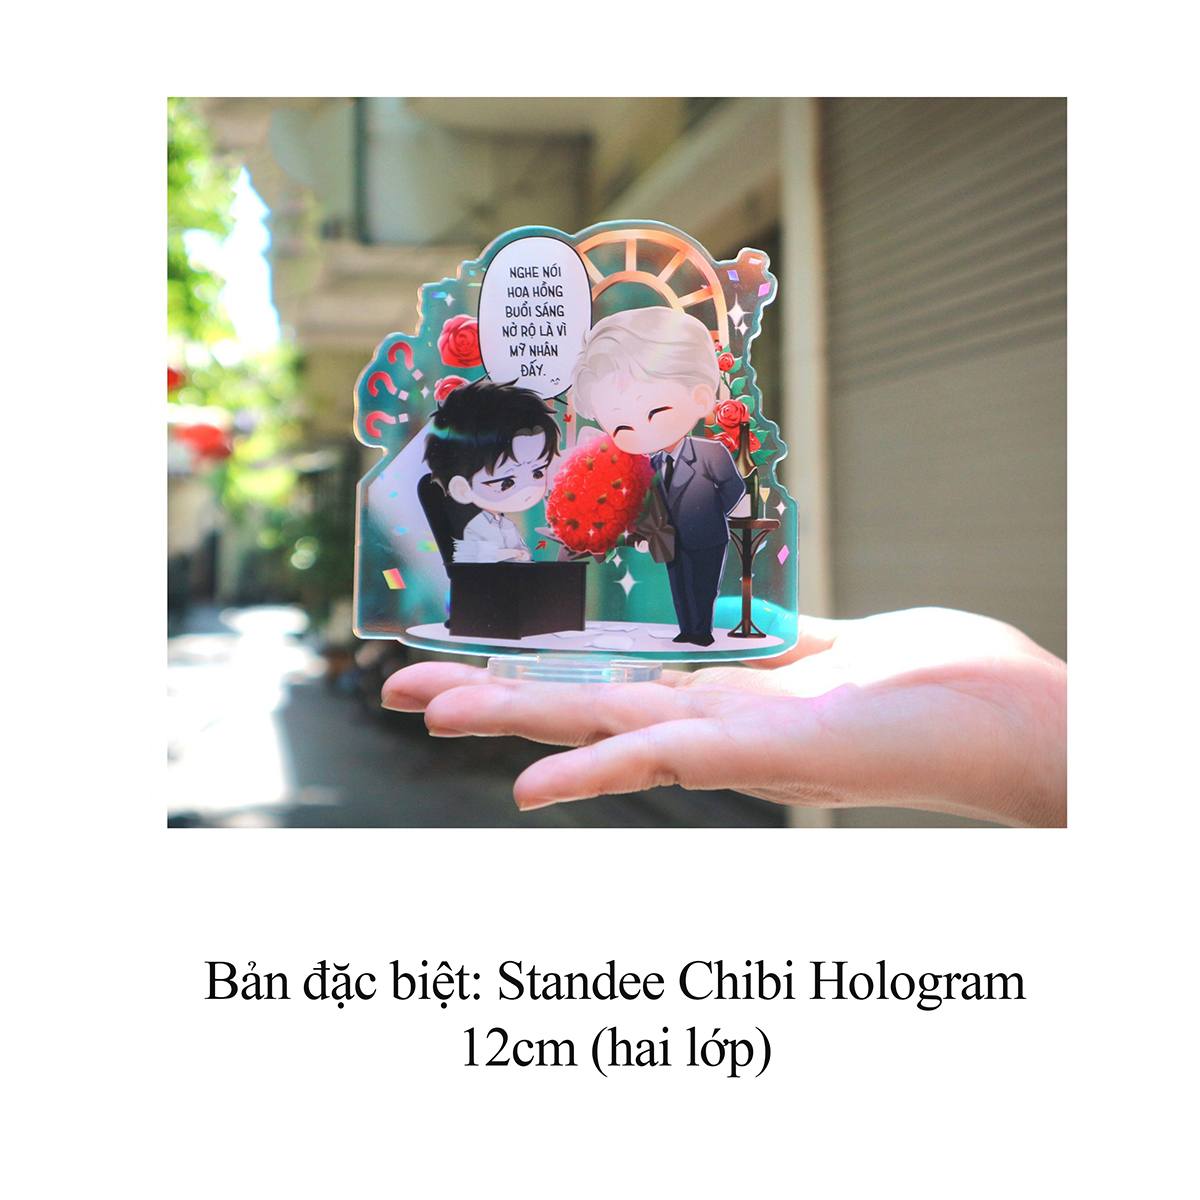 Roses And Champagne - Hoa Hồng Và Sâm Banh - Tập 1 - Tặng Kèm Postcard Hai Mặt Bồi Cứng Bookmark Chibi Bồi Cứng Standee Chibi Hologram PDF